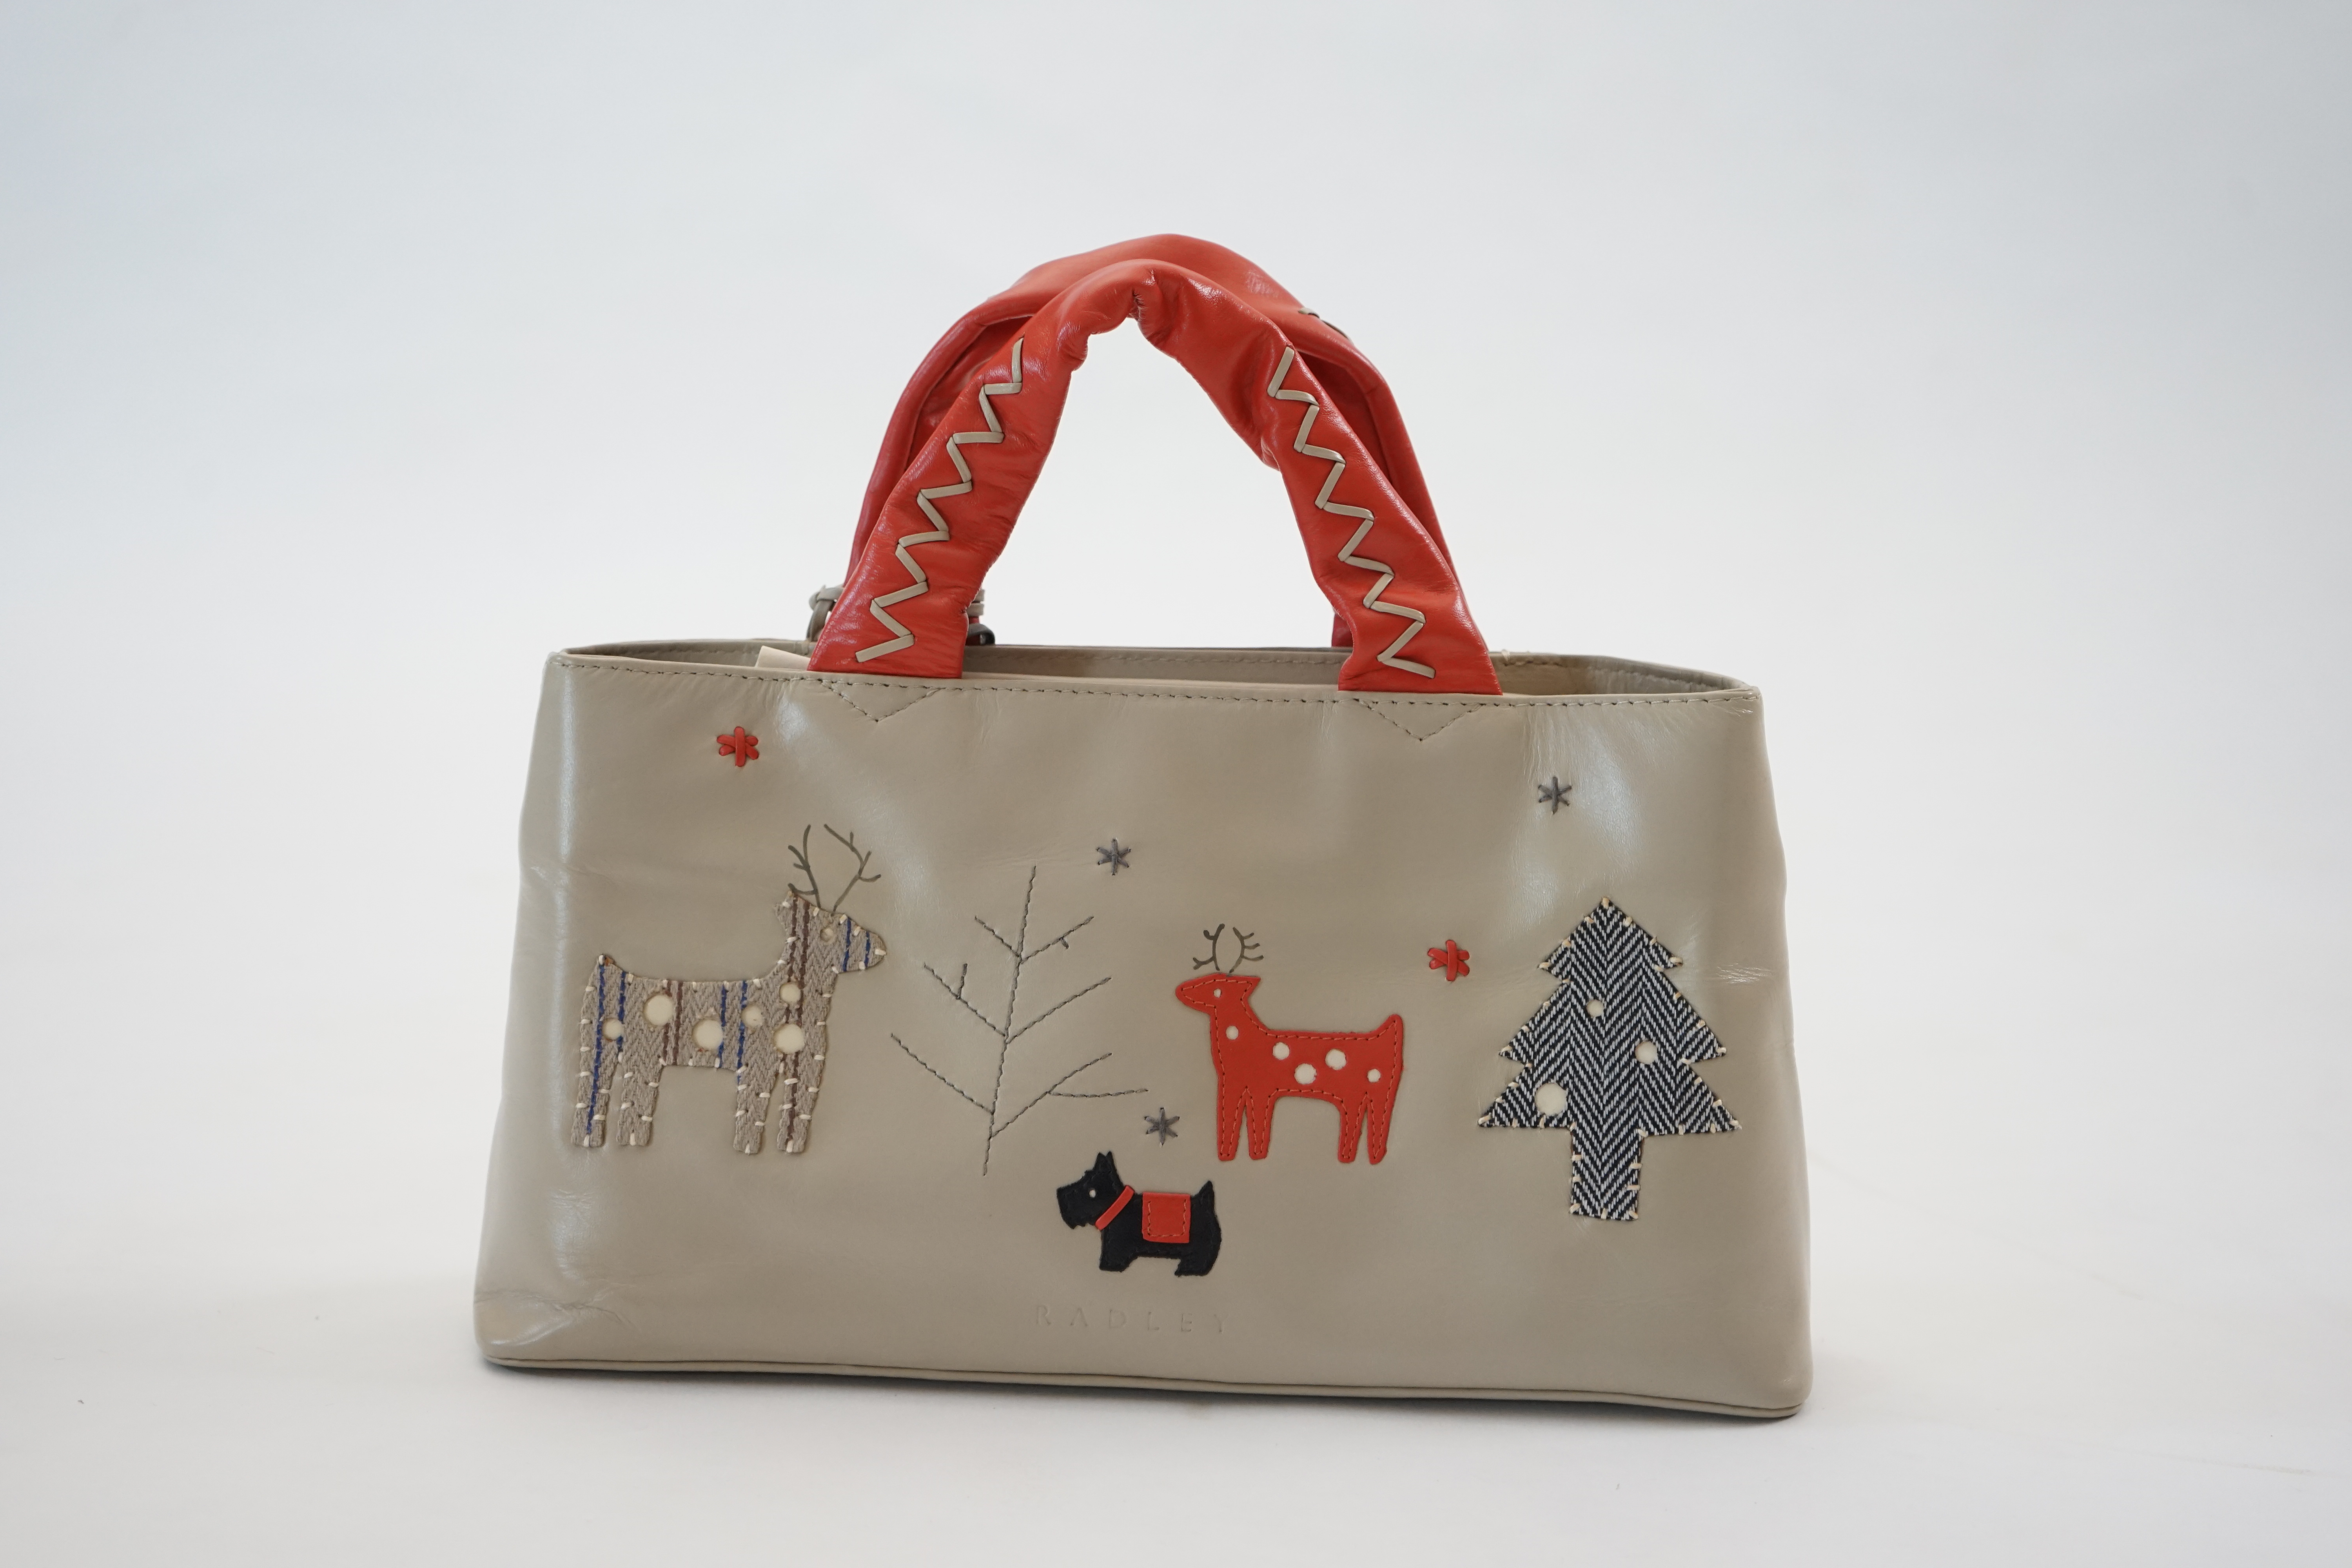 A Radley 'Seasons Greeting Reindeer Christmas' leather grab handle bag 2005, width 30cm, depth 8cm, height 16cm